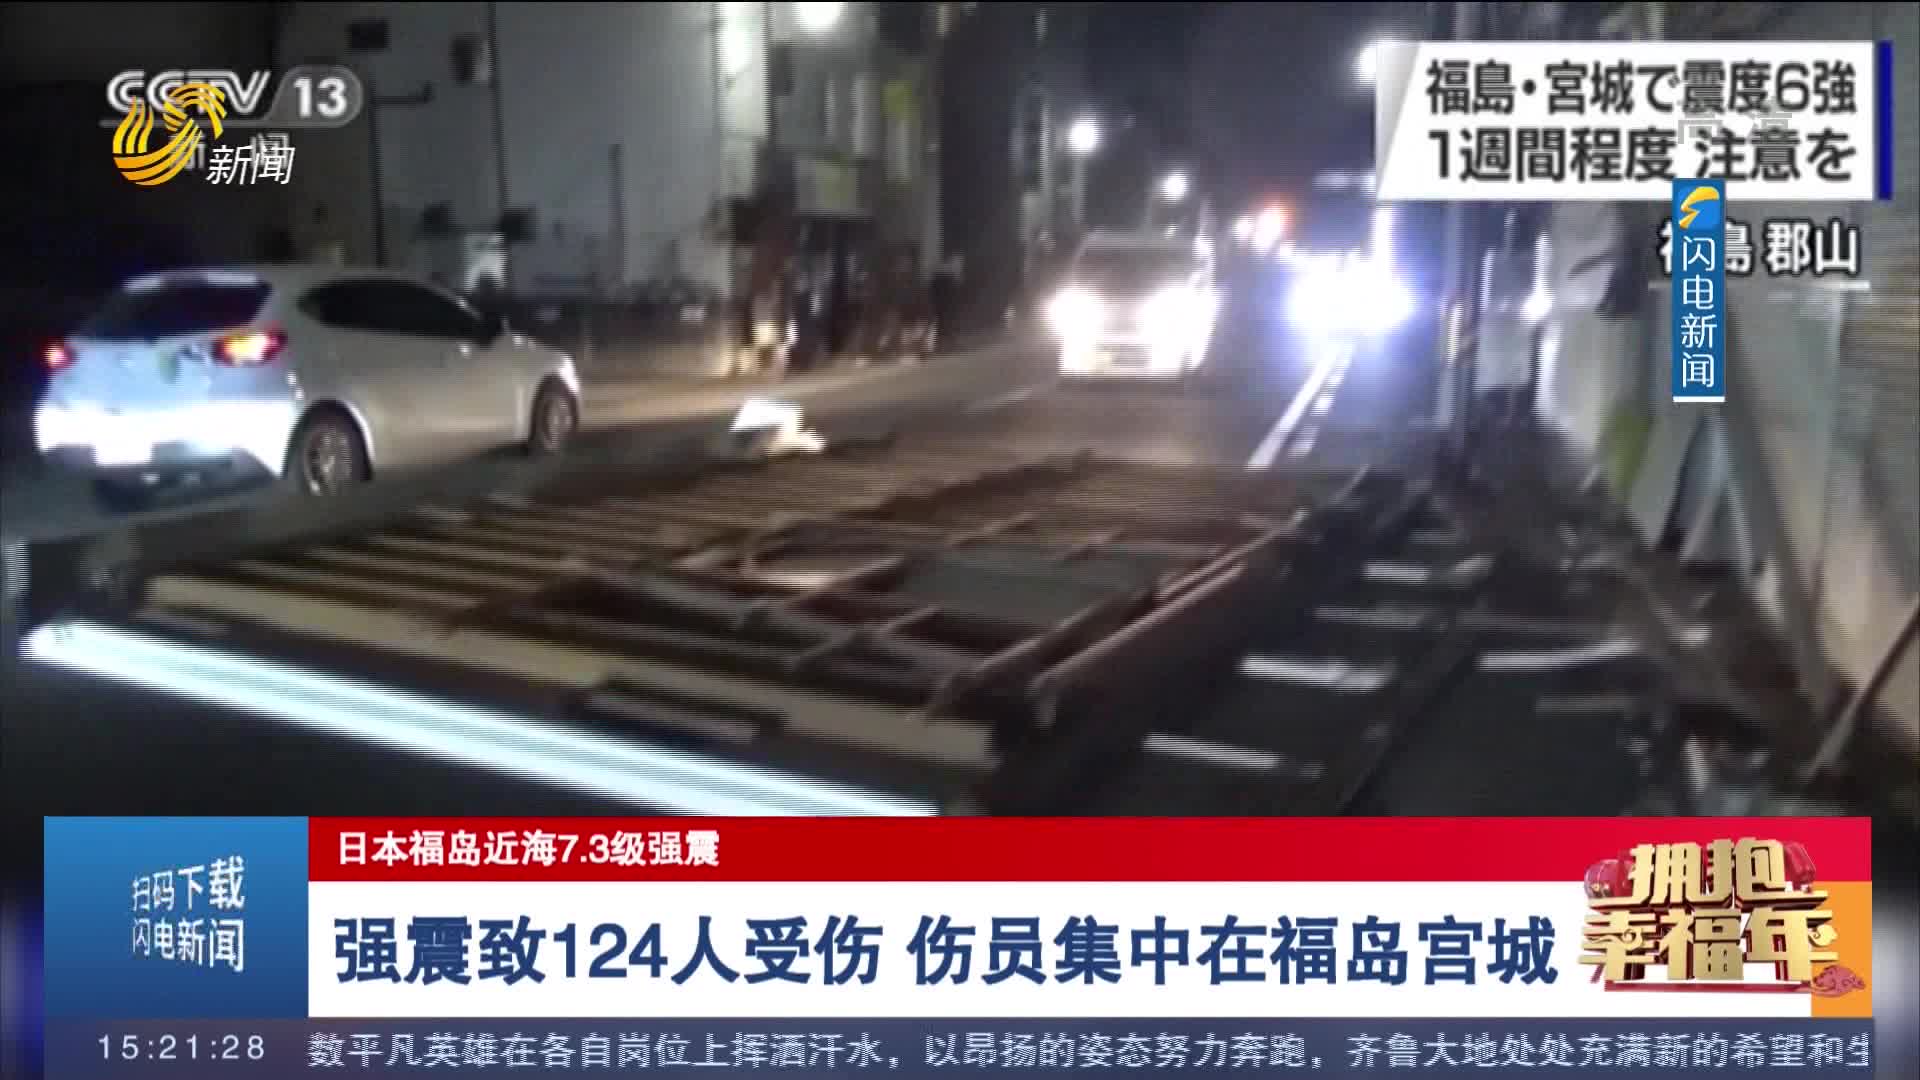 【日本福岛近海7.3级强震】强震致124人受伤 伤员集中在福岛宫城